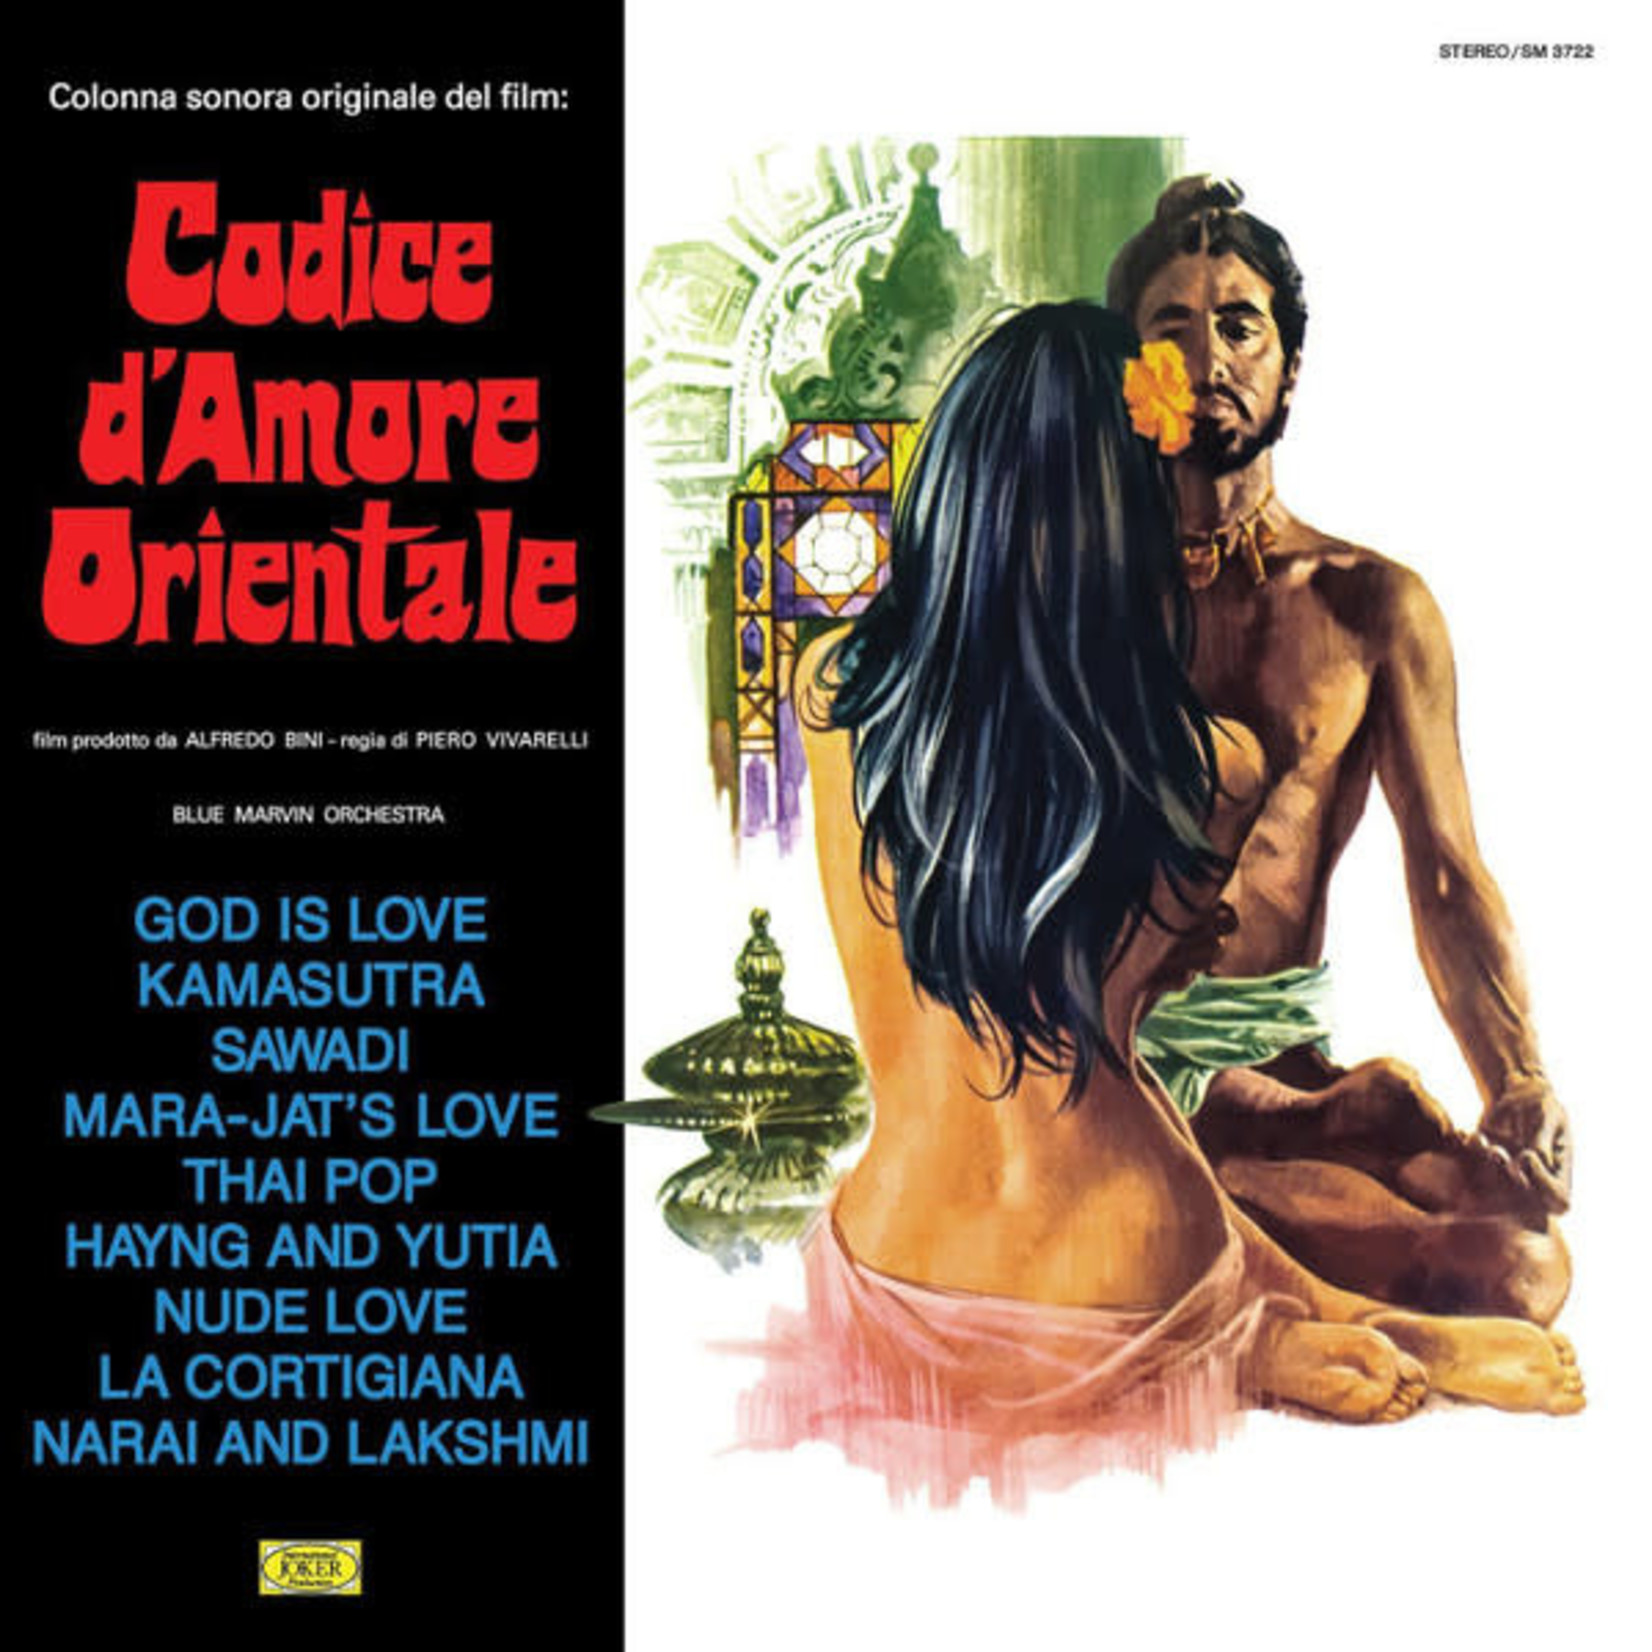 Blue Marvin Orchestra – Codice D'Amore Orientale (Colonna Sonora Originale Del Film)